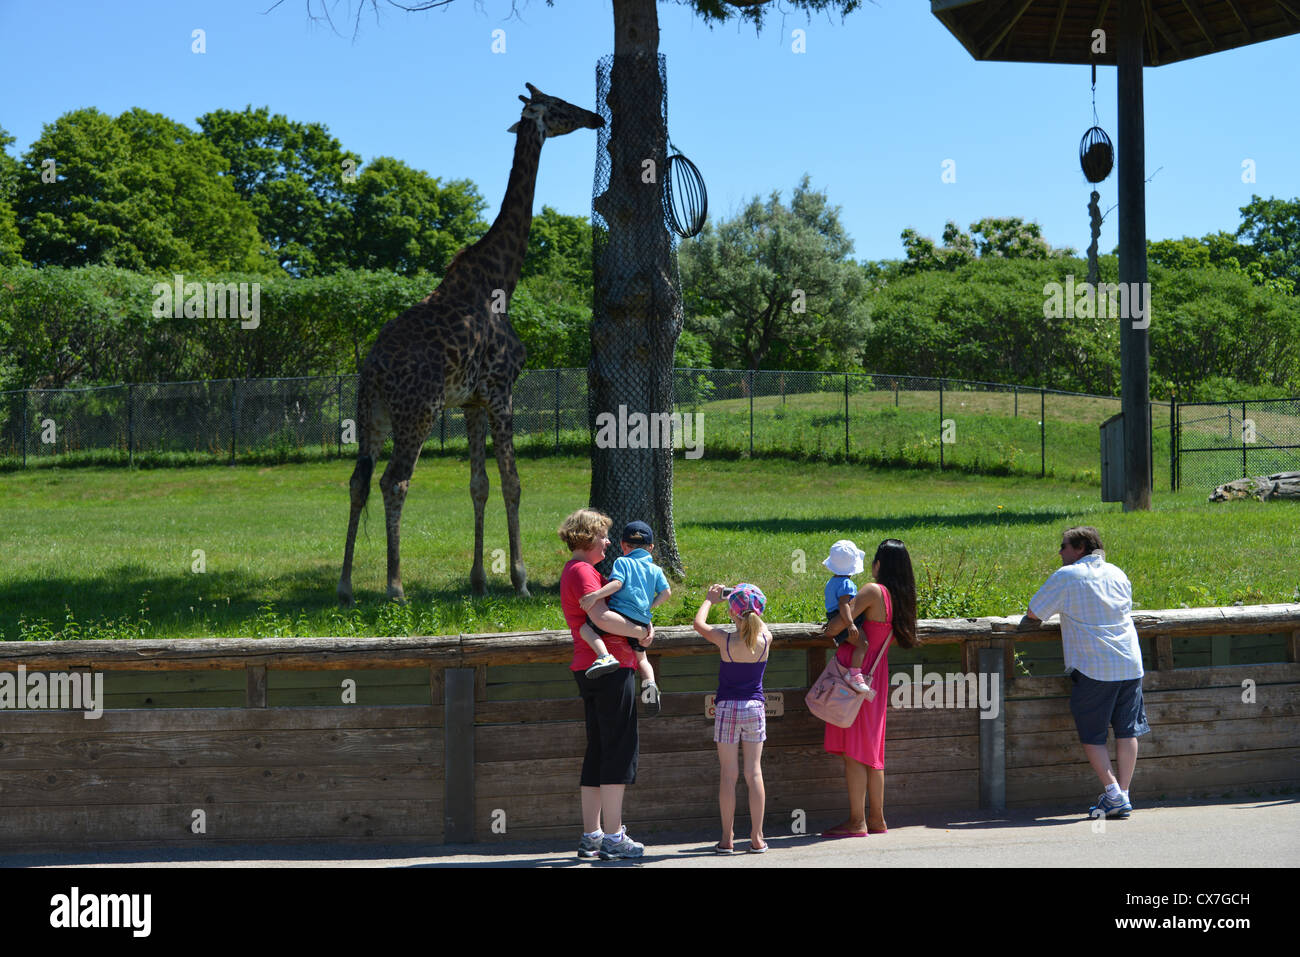 Il s'agit d'une image d'une Girafe au zoo de Toronto Banque D'Images